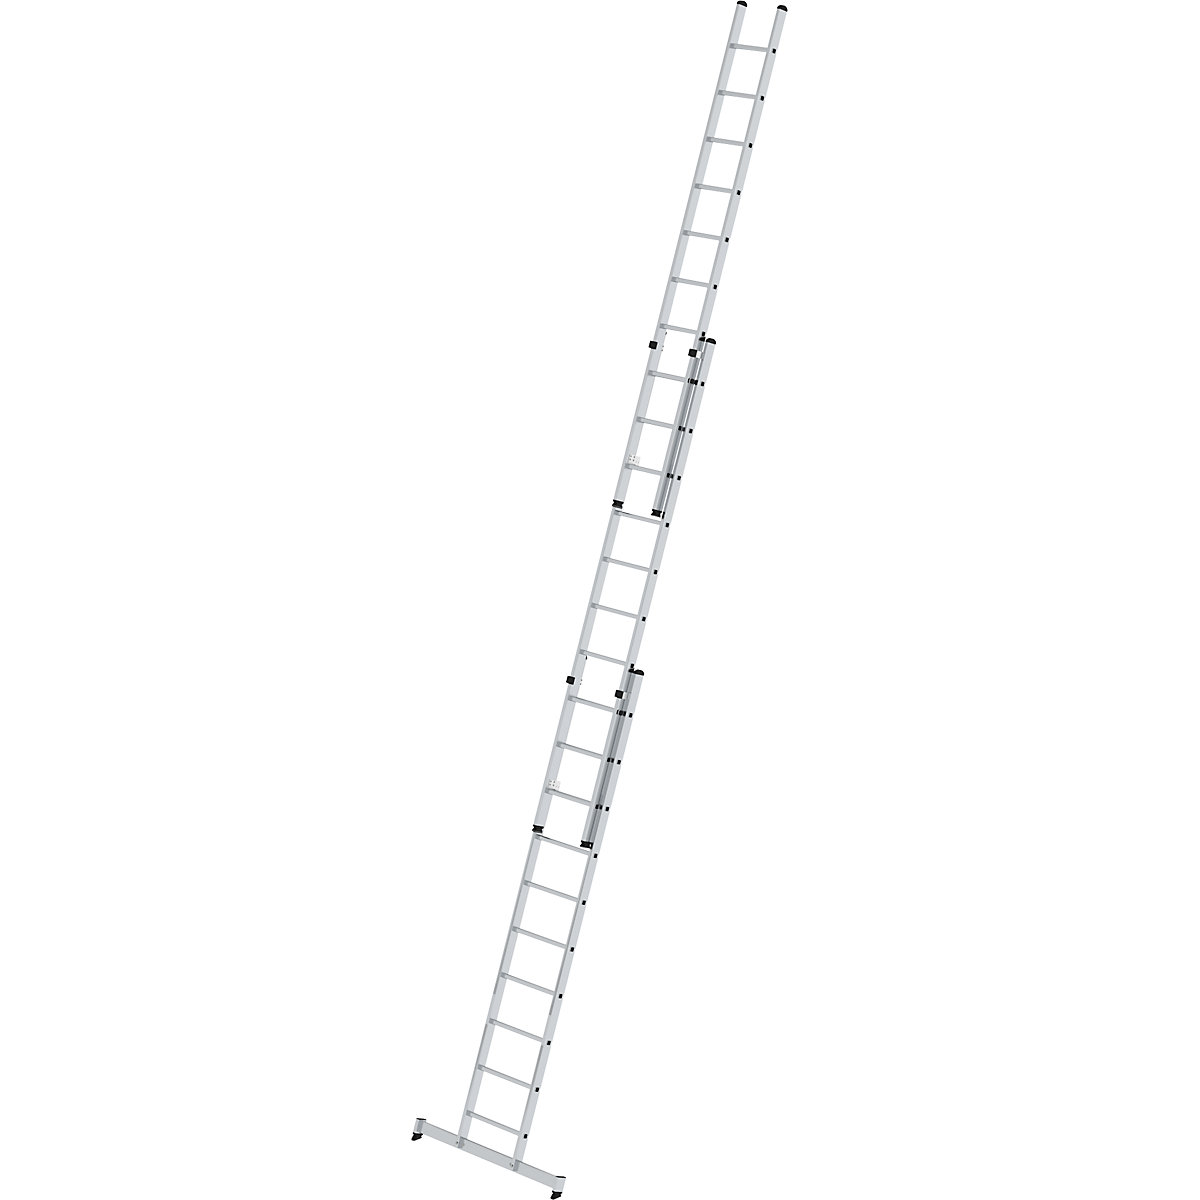 Escalera de mano de altura regulable – MUNK, escalera extensible, de 3 tramos con traviesa nivello®, 3 x 10 peldaños-8